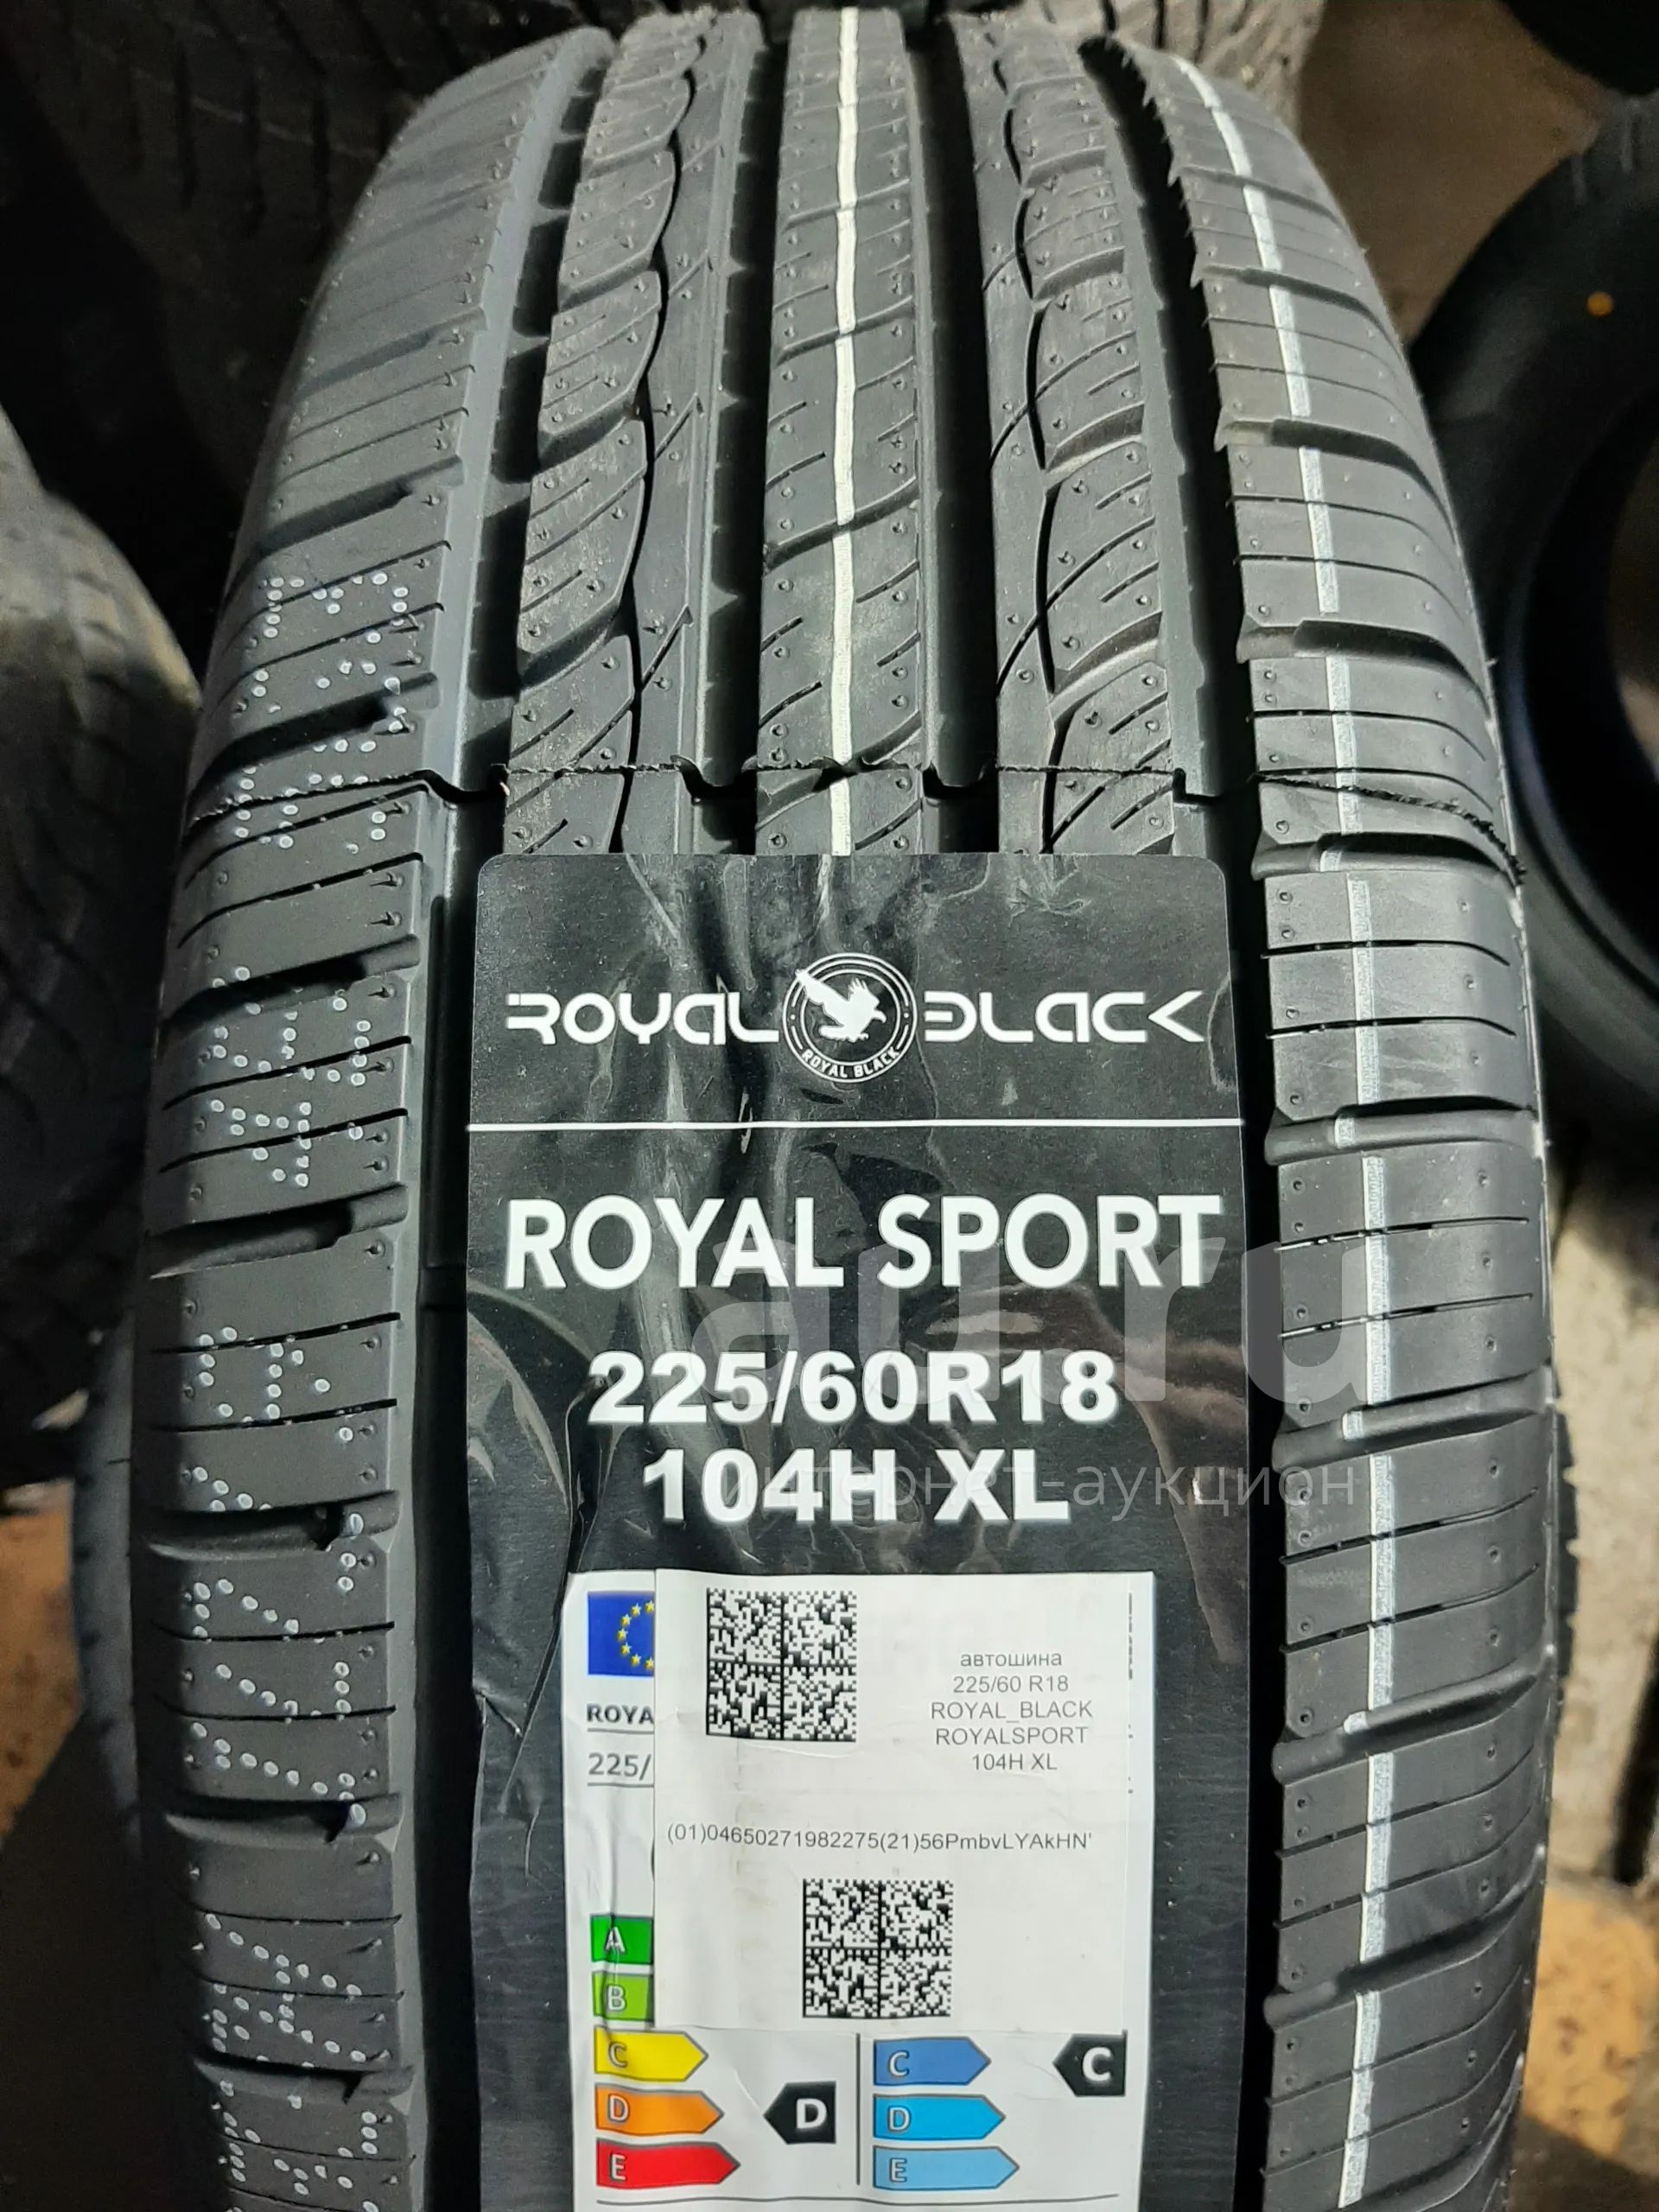 Шины Royal Black Royal Sport. Автошина Royal Black ROYALSPORT 225/60 r17 99h. Royal Black 225/55r18 Royal Sport 98h. Шины Роял Блэк летние маркировка. Шины royal sport